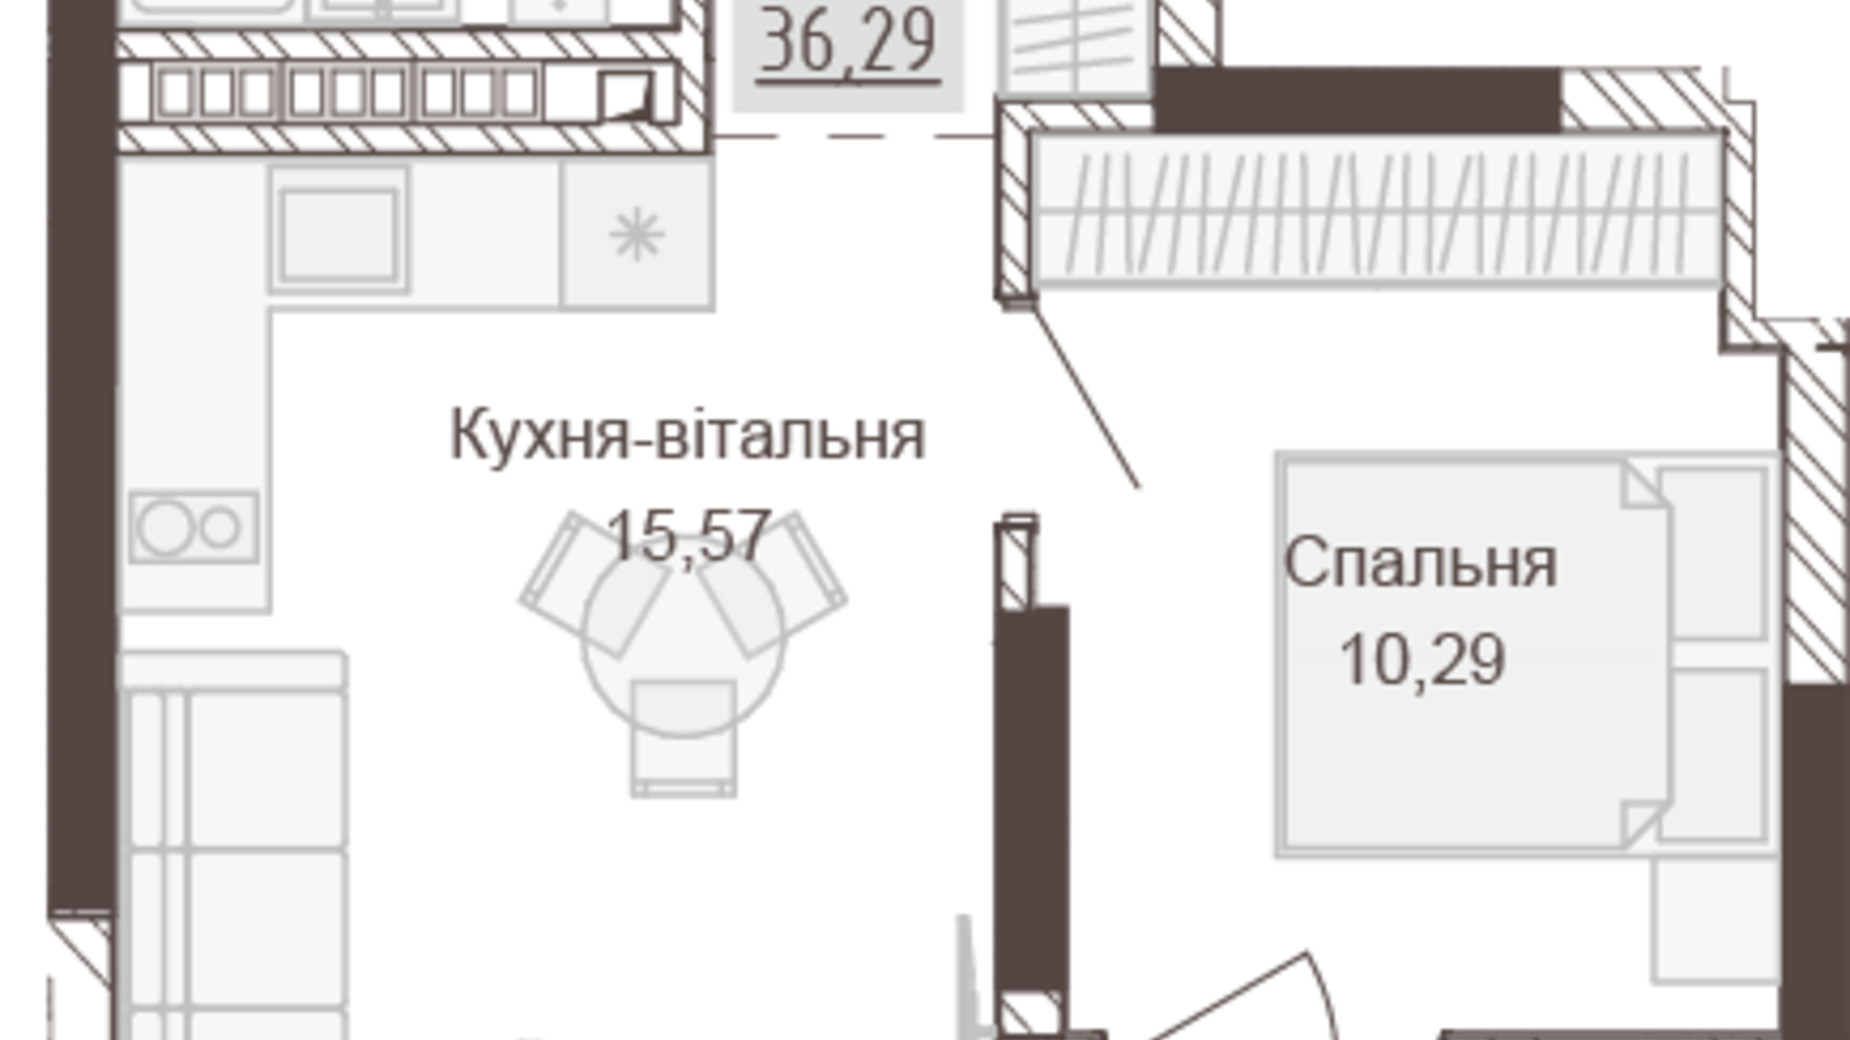 Планировка 1-комнатной квартиры в Апарт-комплекс Pokrovsky Apart Complex 36.29 м², фото 666550